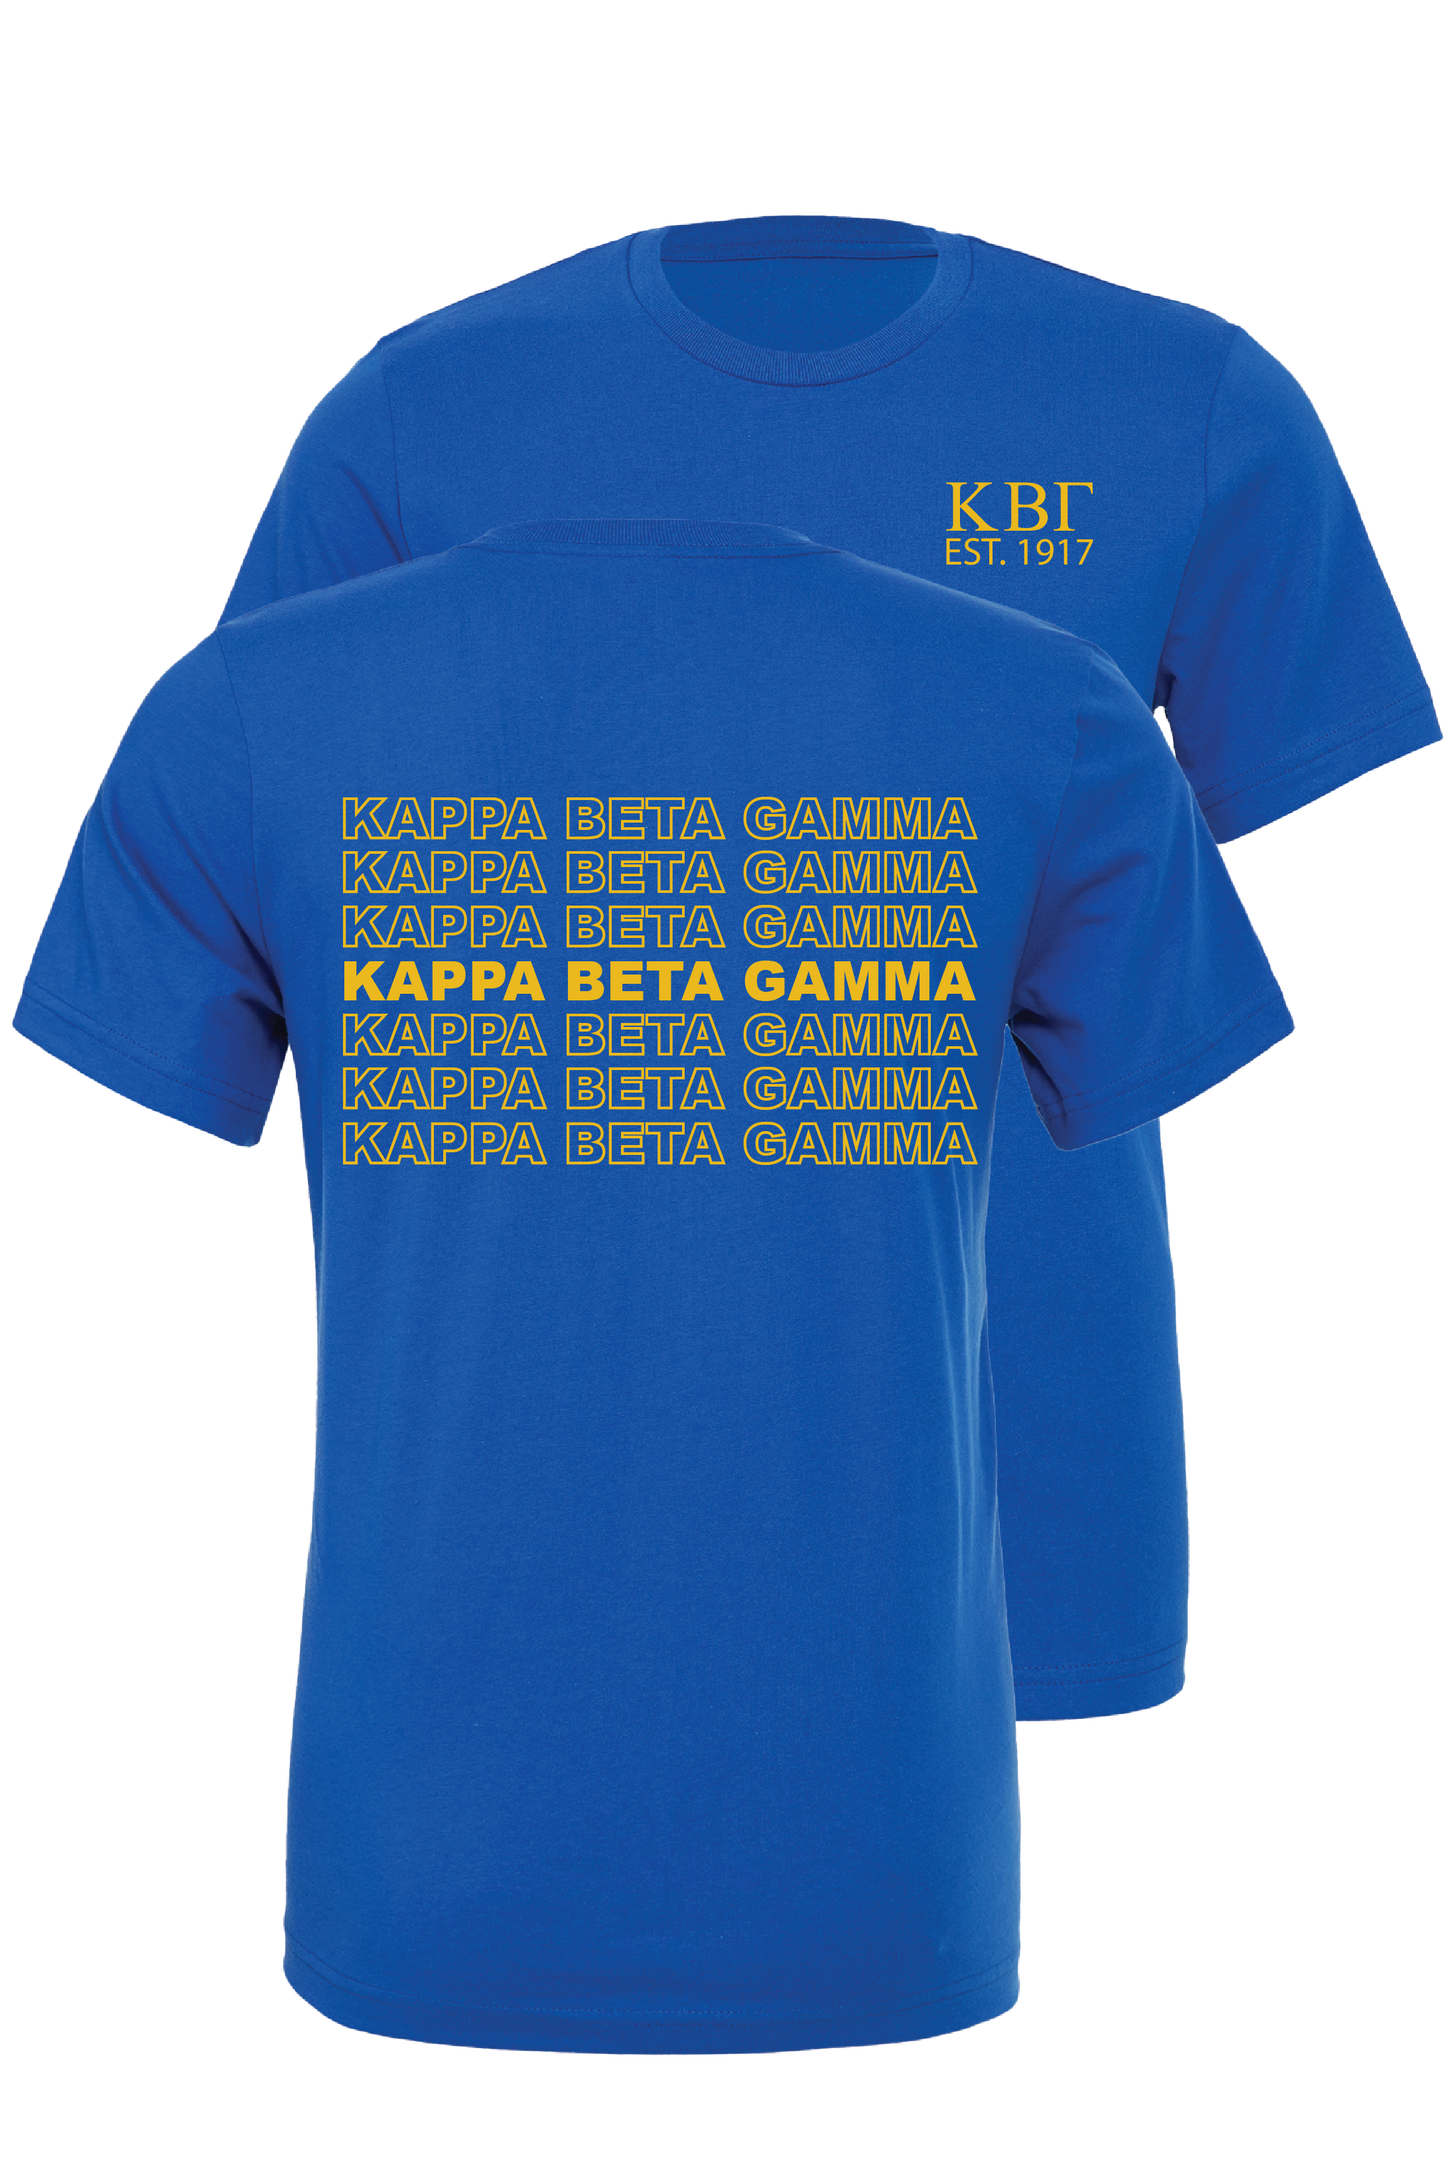 Kappa Beta Gamma Repeating Name Short Sleeve T-Shirts